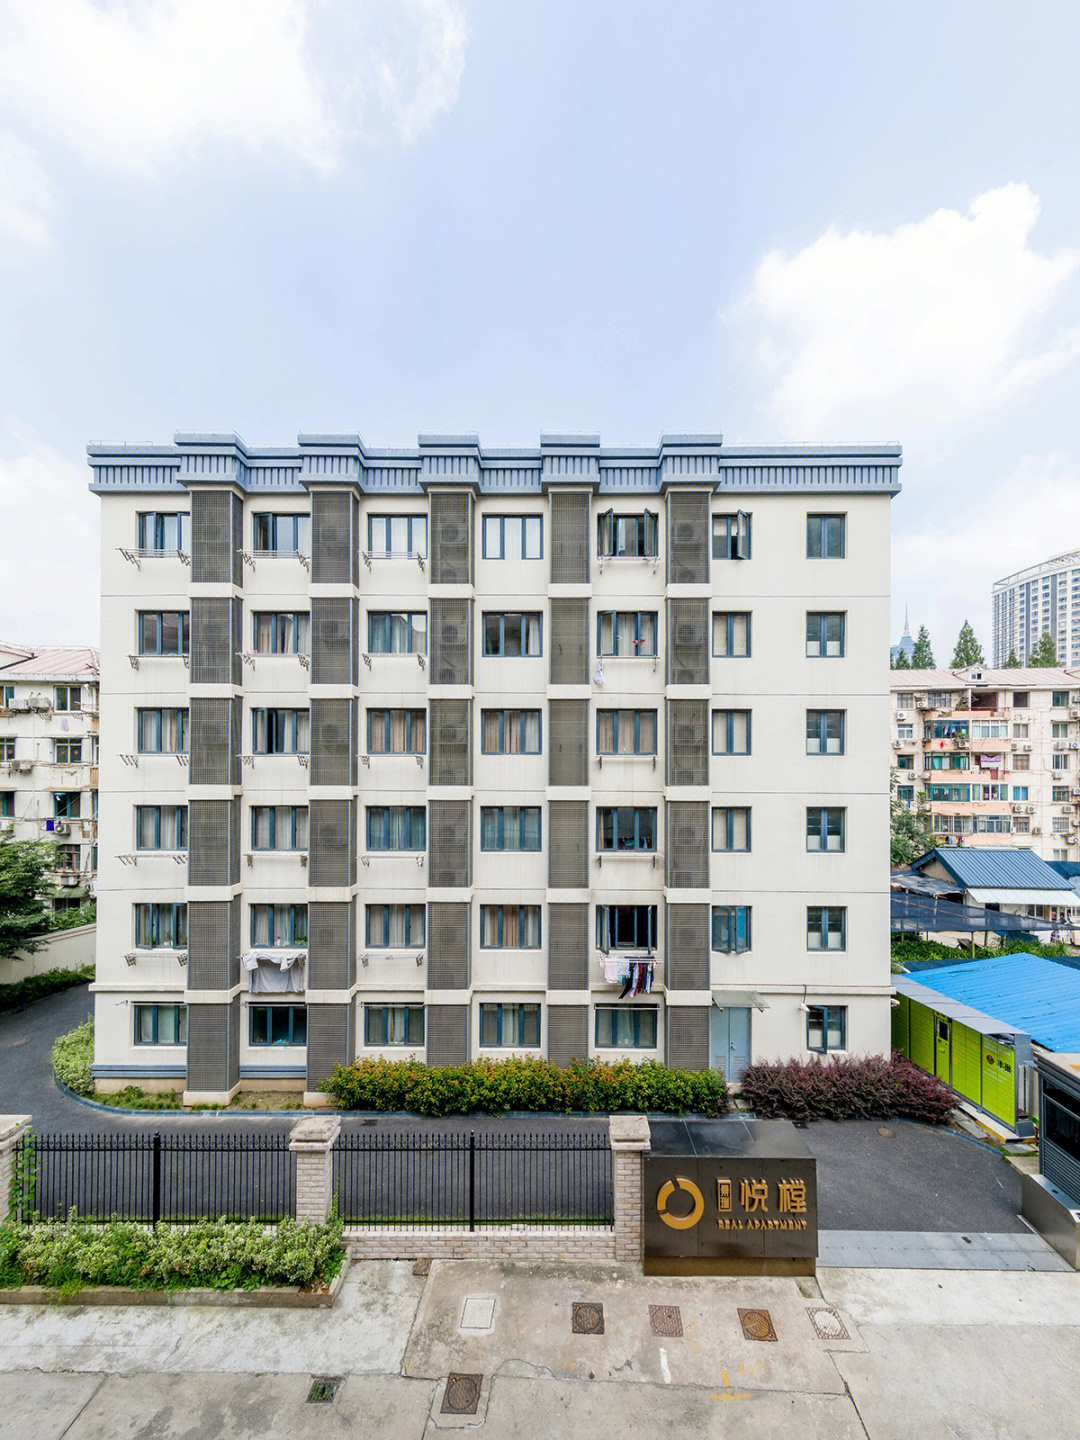 悦樘公寓上海图片